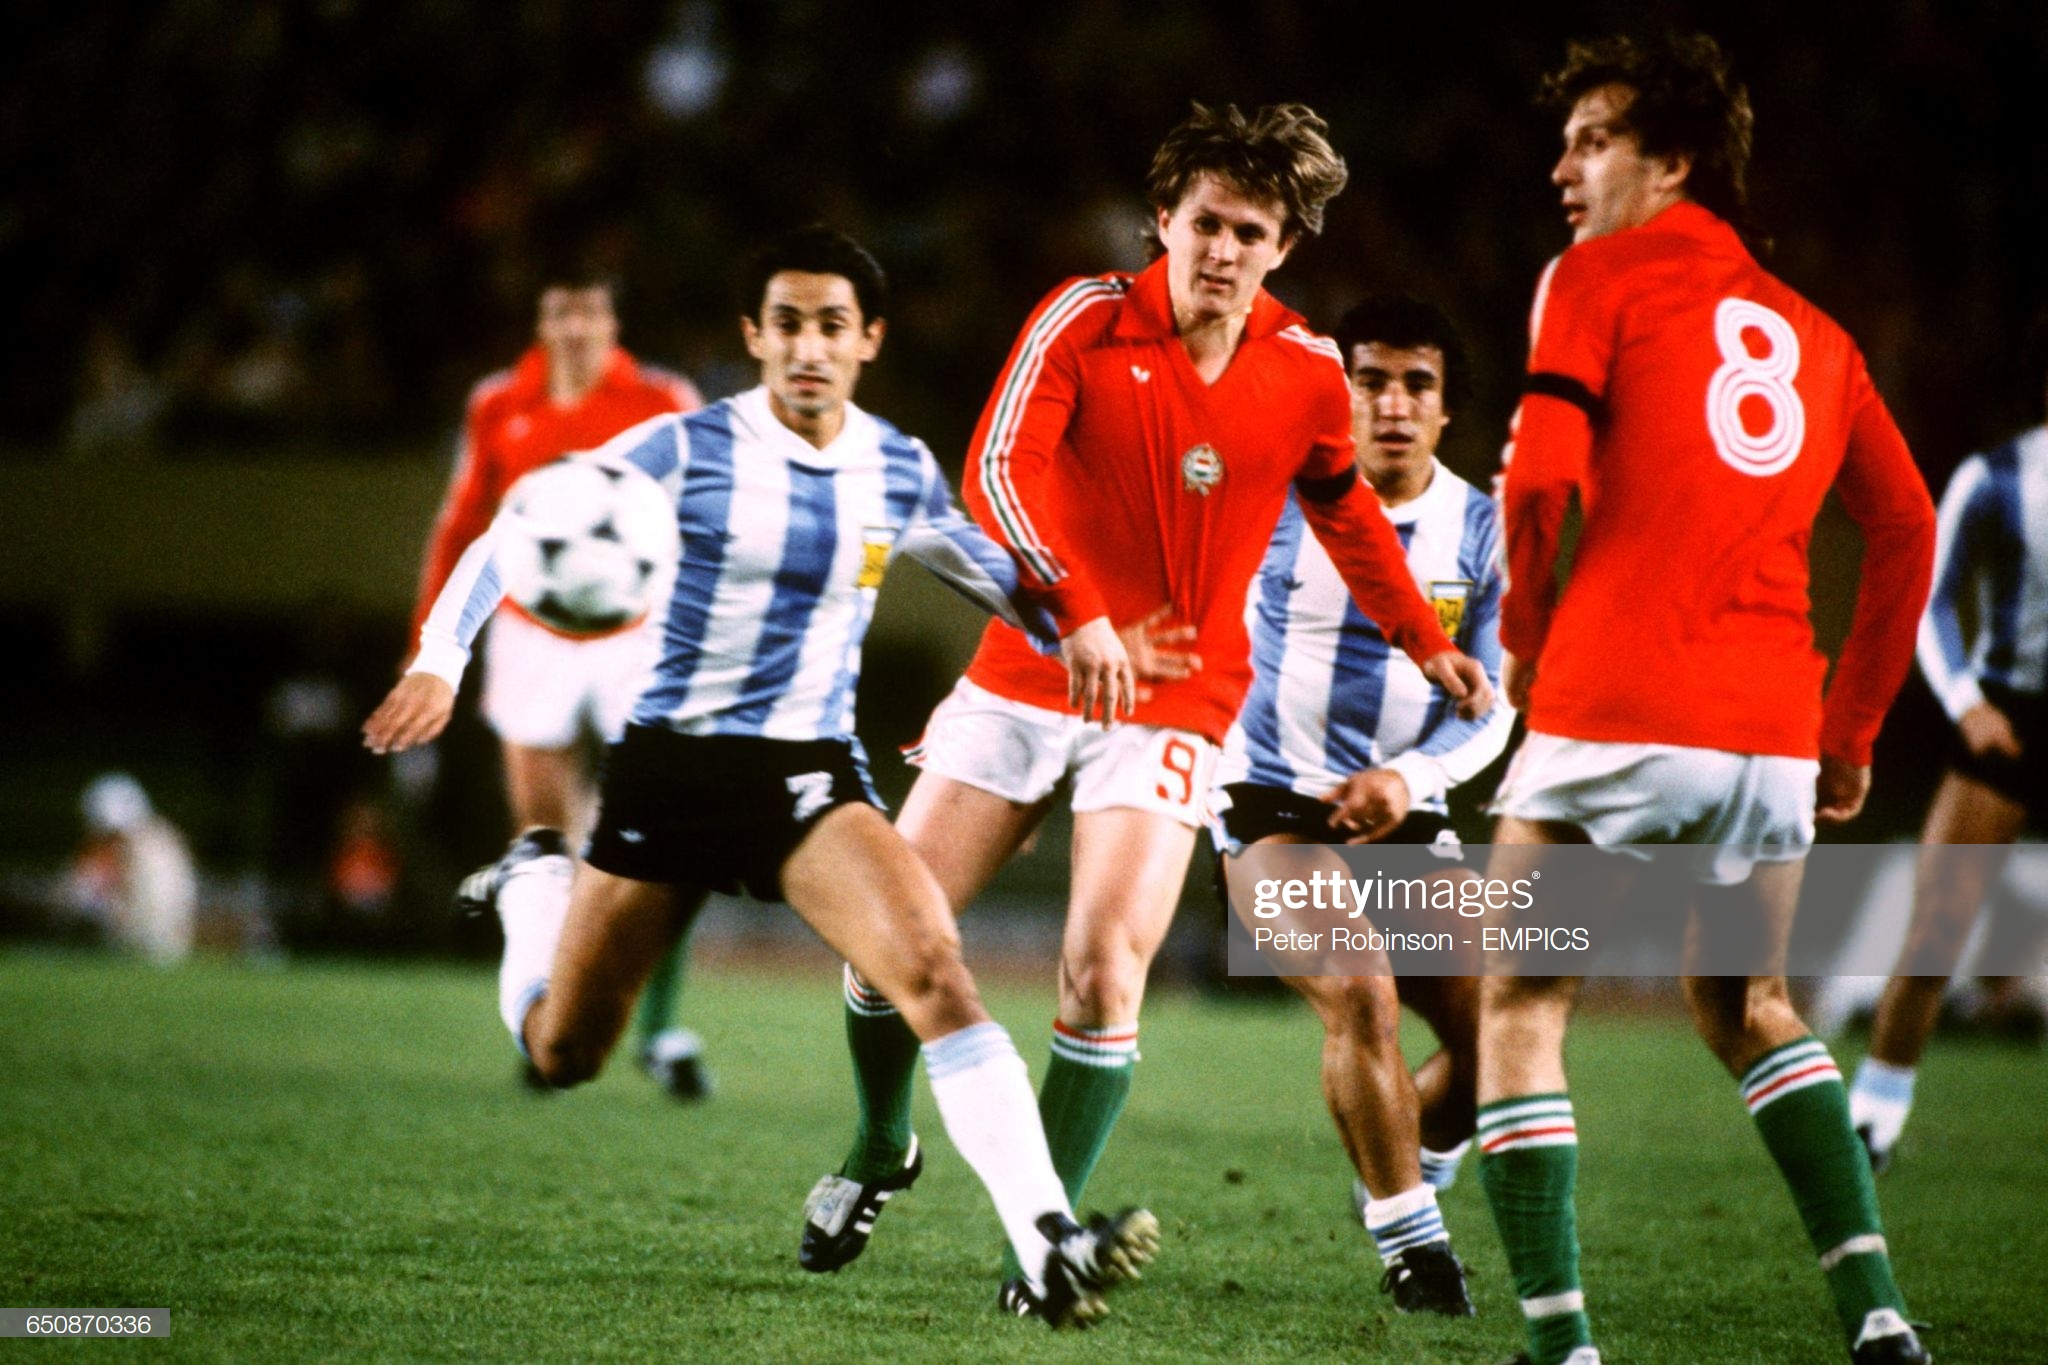 Аргентина-Венгрия. Матчи чемпионата мира по футболу 1978 года - Футбол  ушедшей эпохи - Блоги - Sports.ru